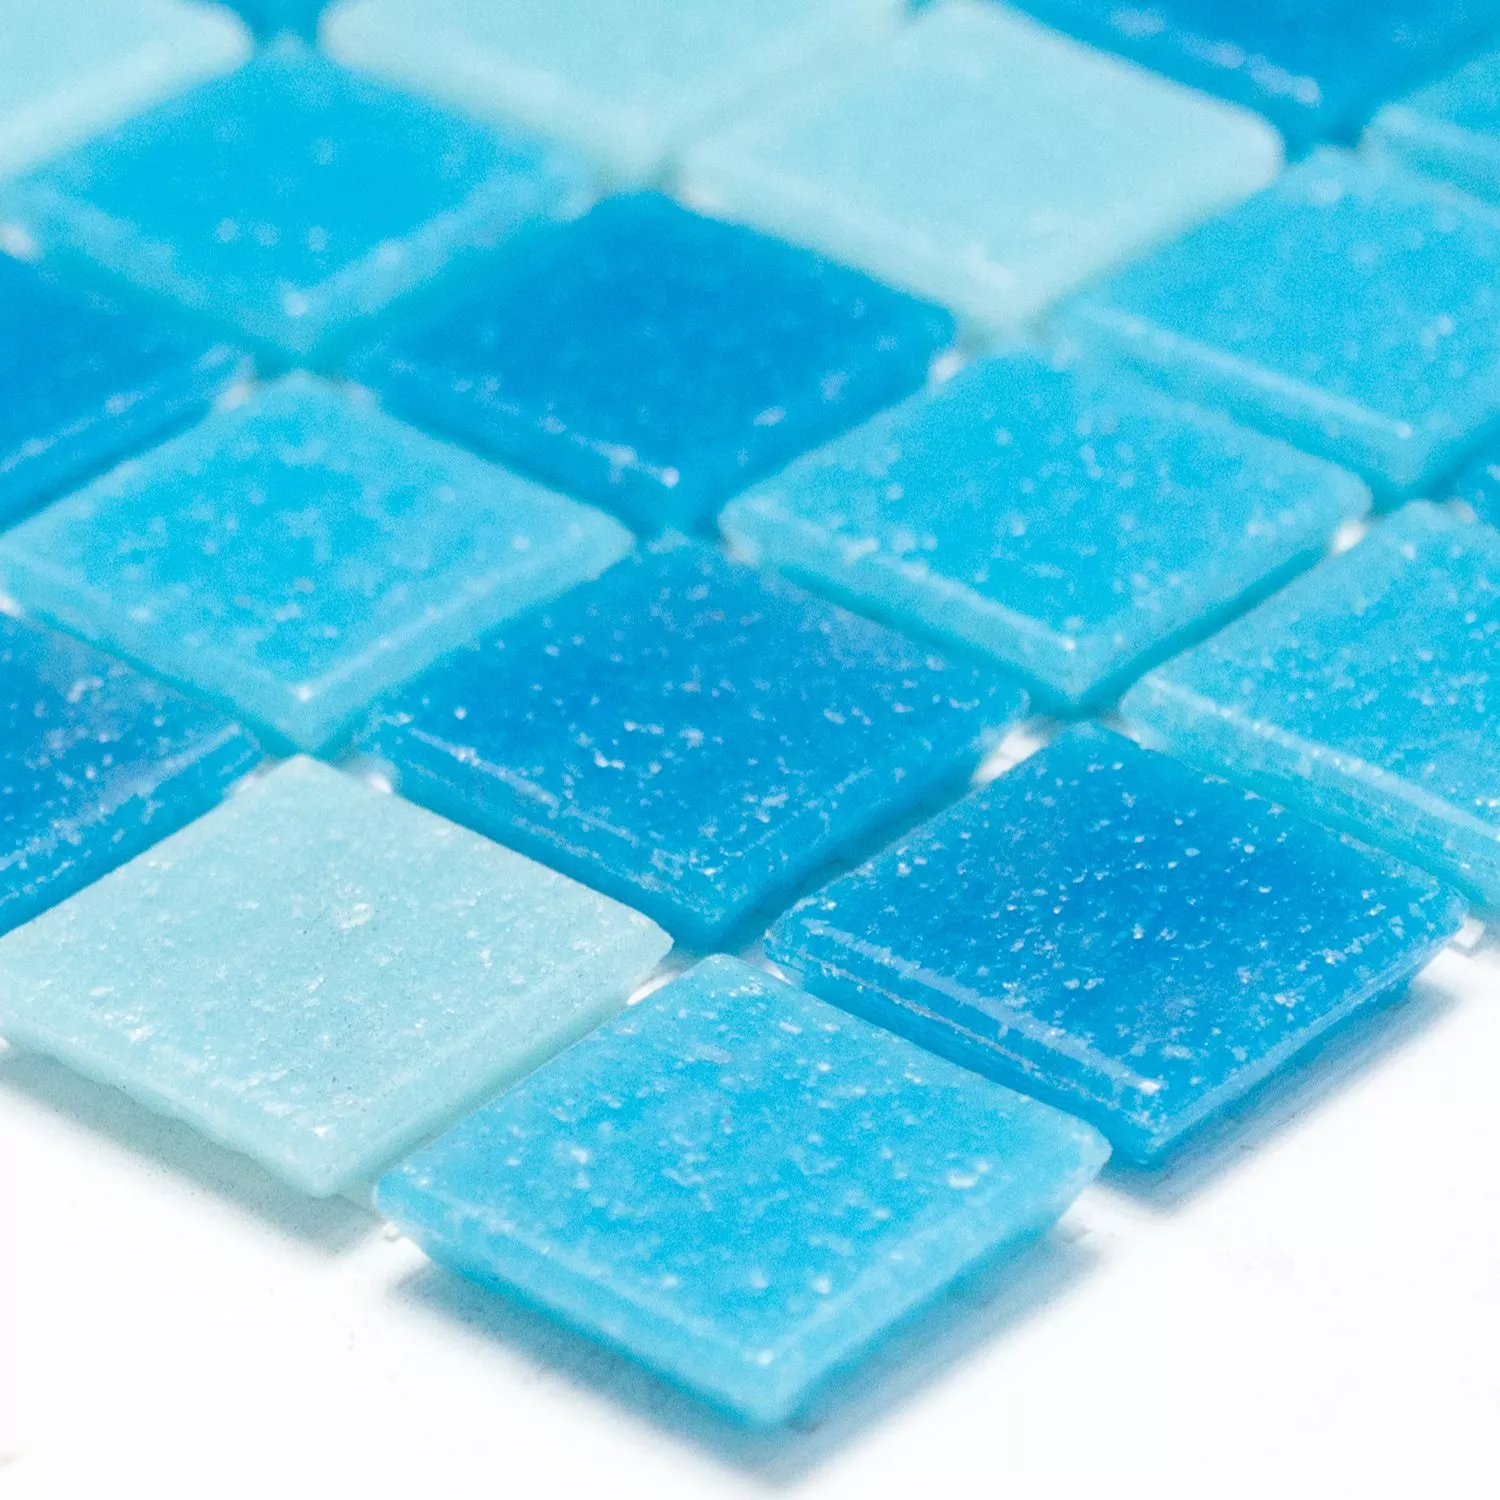 Muster von Glasmosaik Fliesen Blau Mix